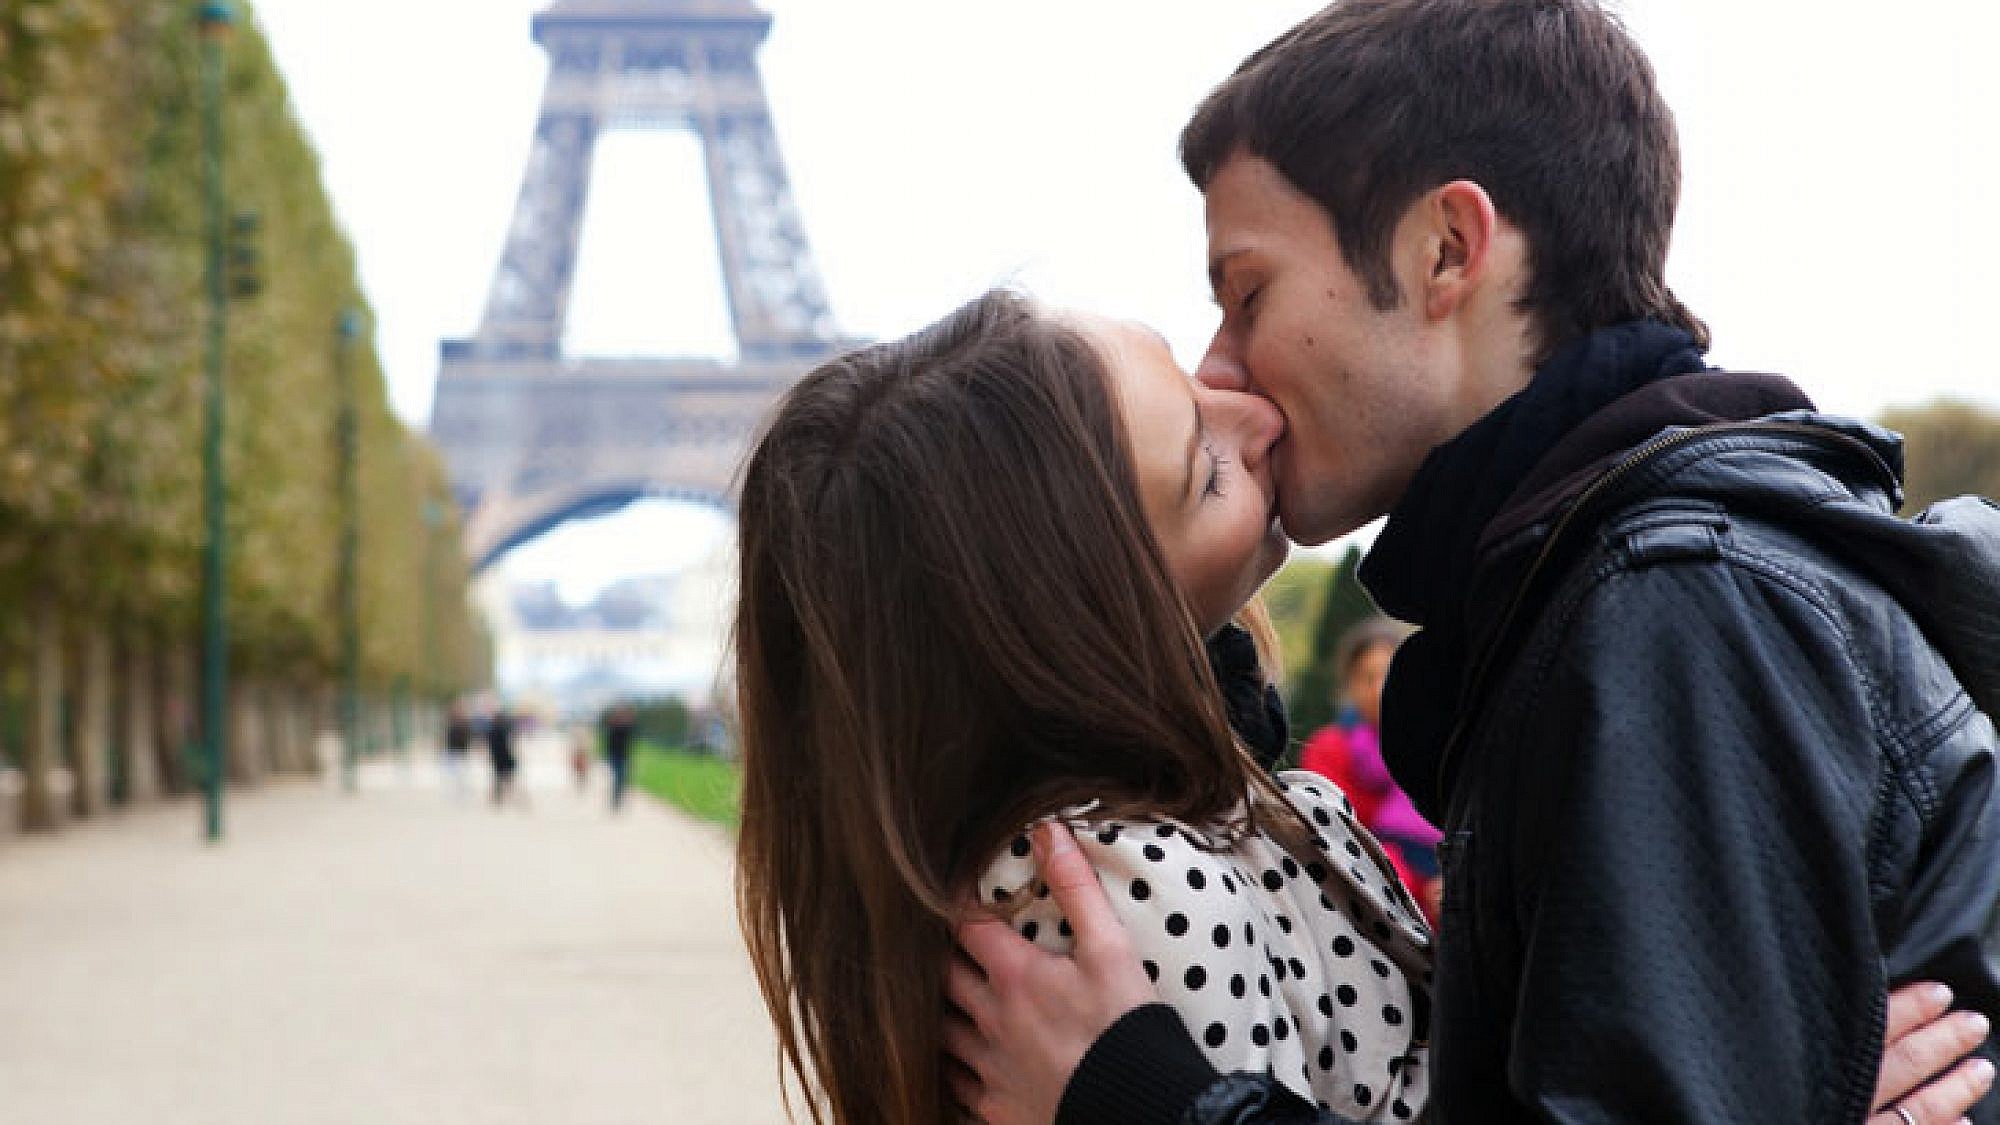 נשיקה צרפתית בצרפת - אין מושלם מזה | צלם: א.ס.א.פ קריאייטיב | Ekaterina Pokrovsky, Shutterstock